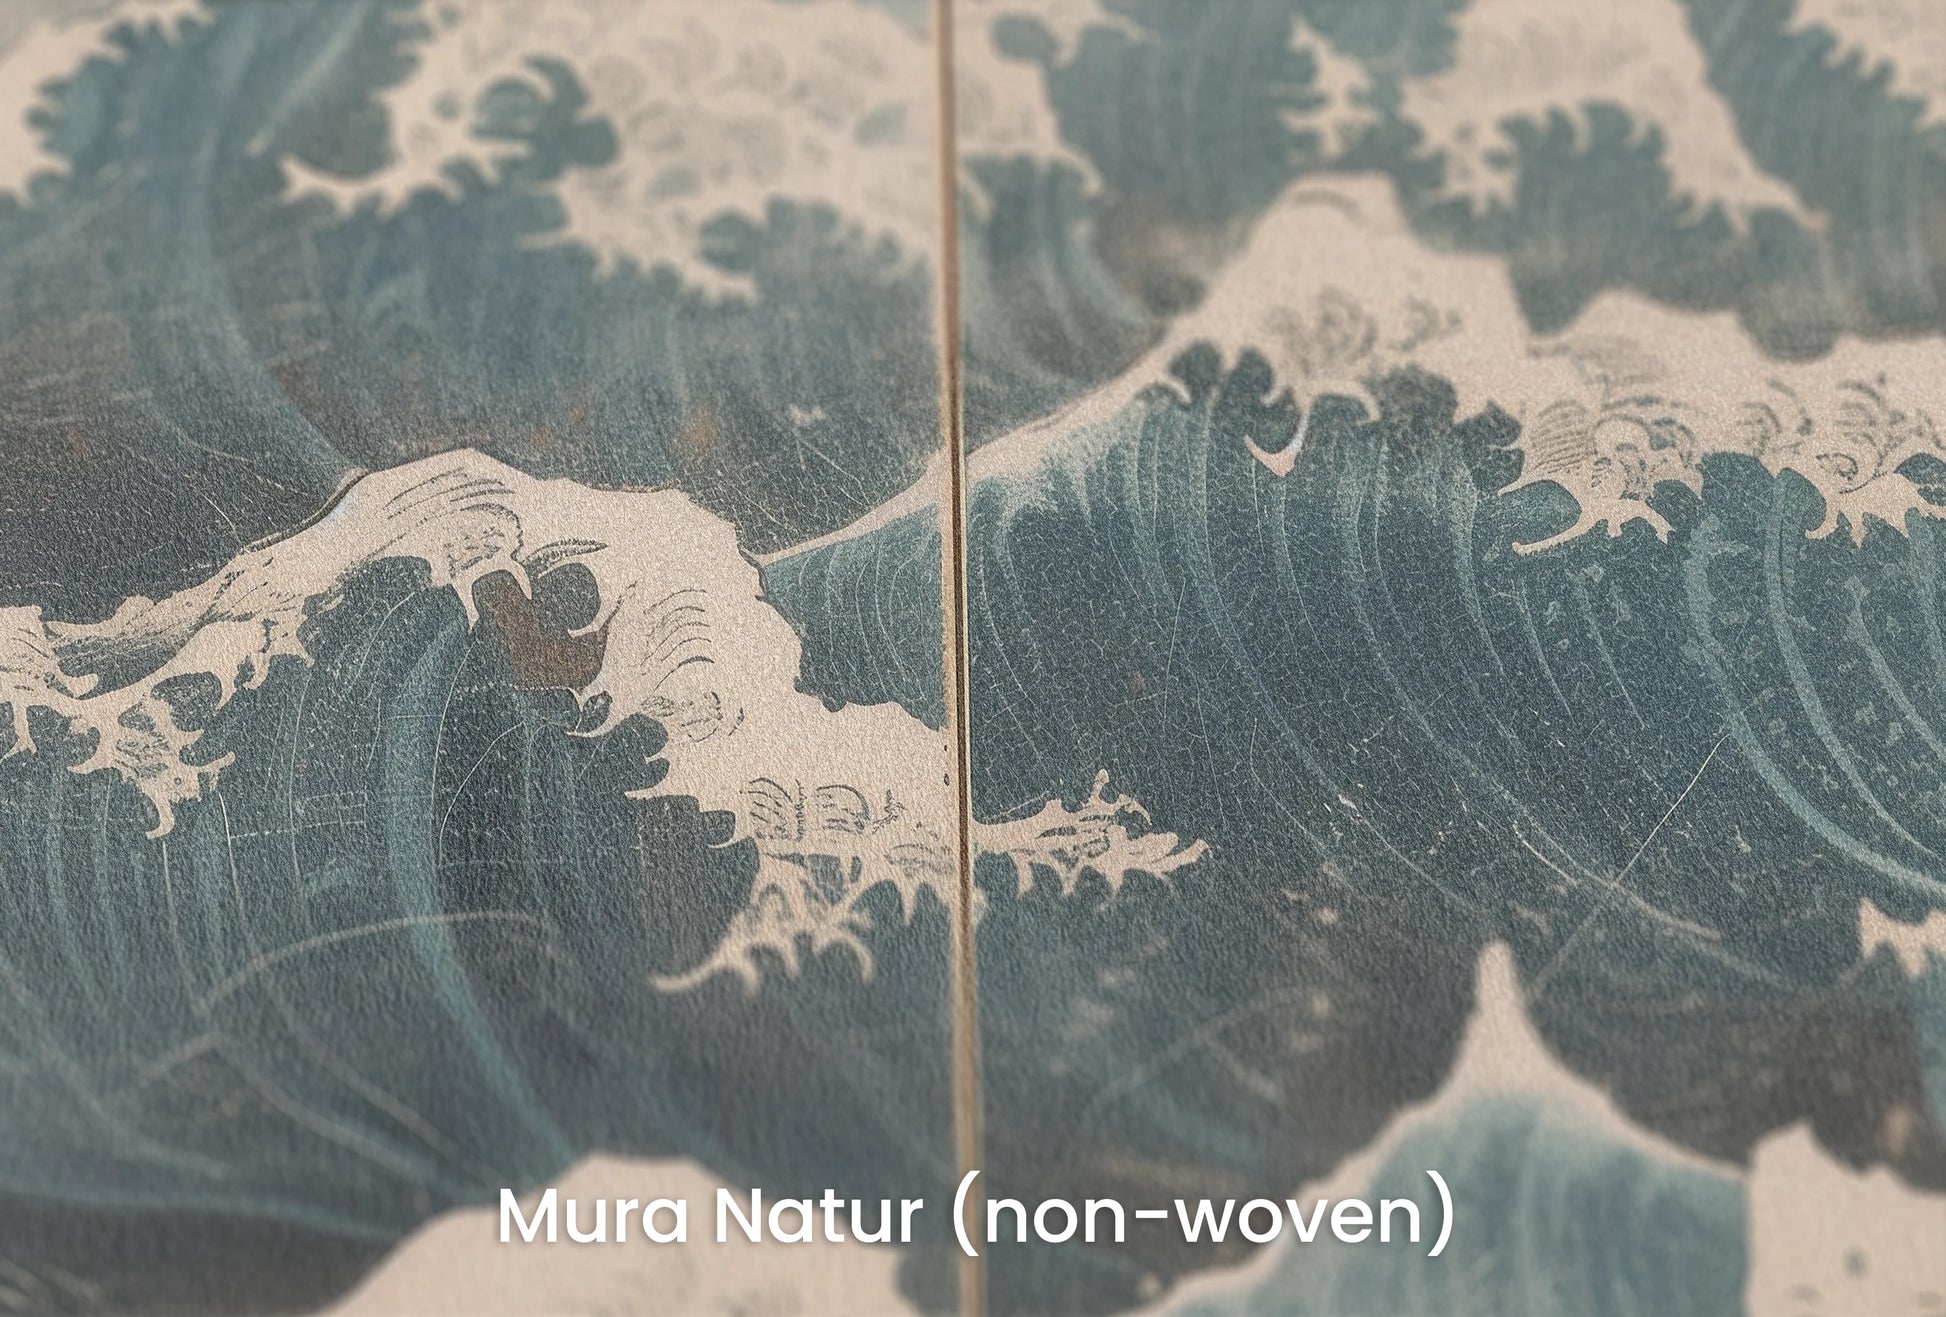 Zbliżenie na artystyczną fototapetę o nazwie Snowy Peak Waves na podłożu Mura Natur (non-woven) - naturalne i ekologiczne podłoże.